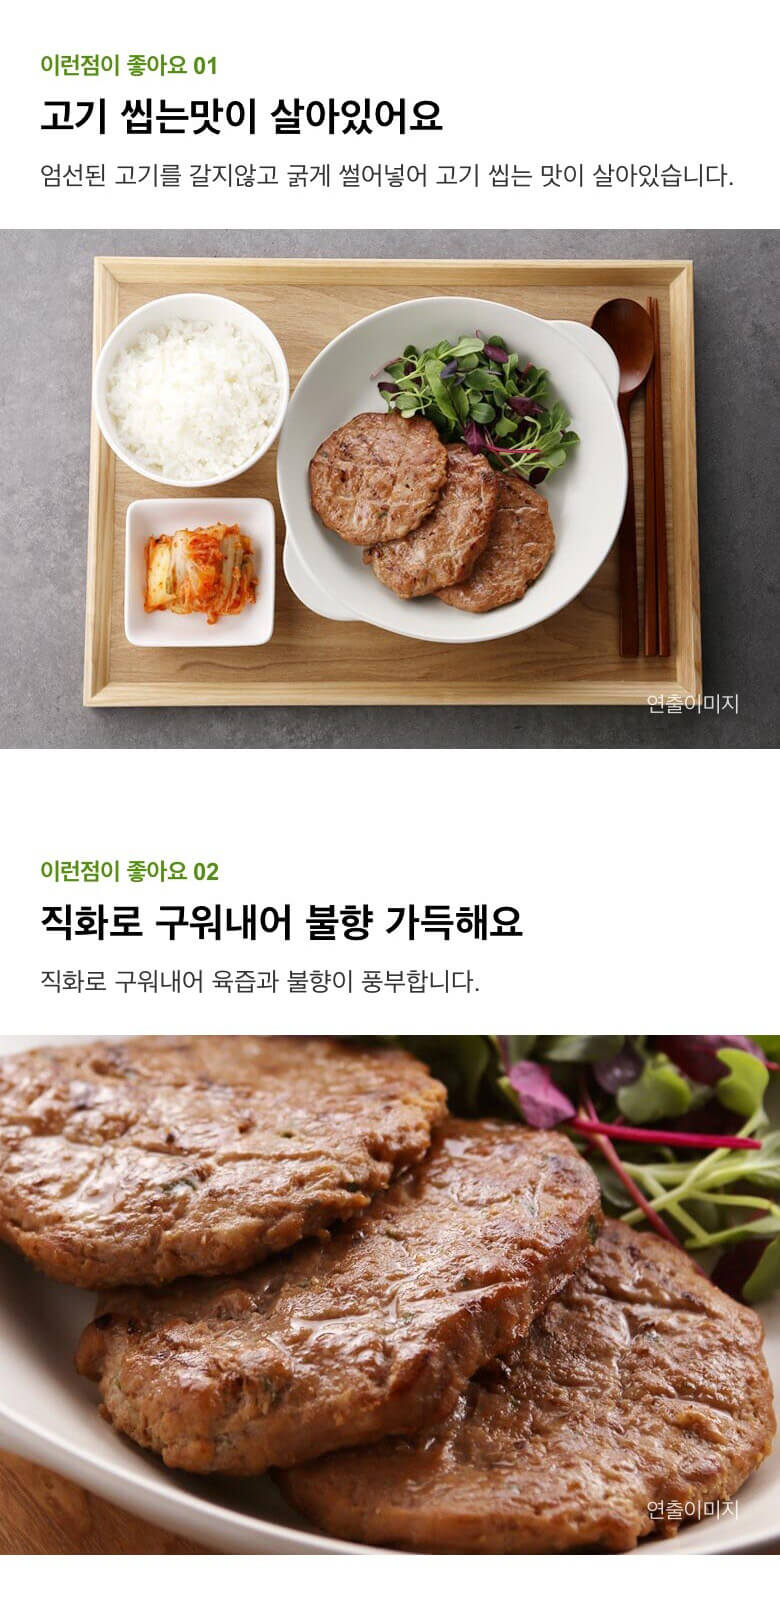 韓國食品-[CJ] 비비고 남도떡갈비 450g